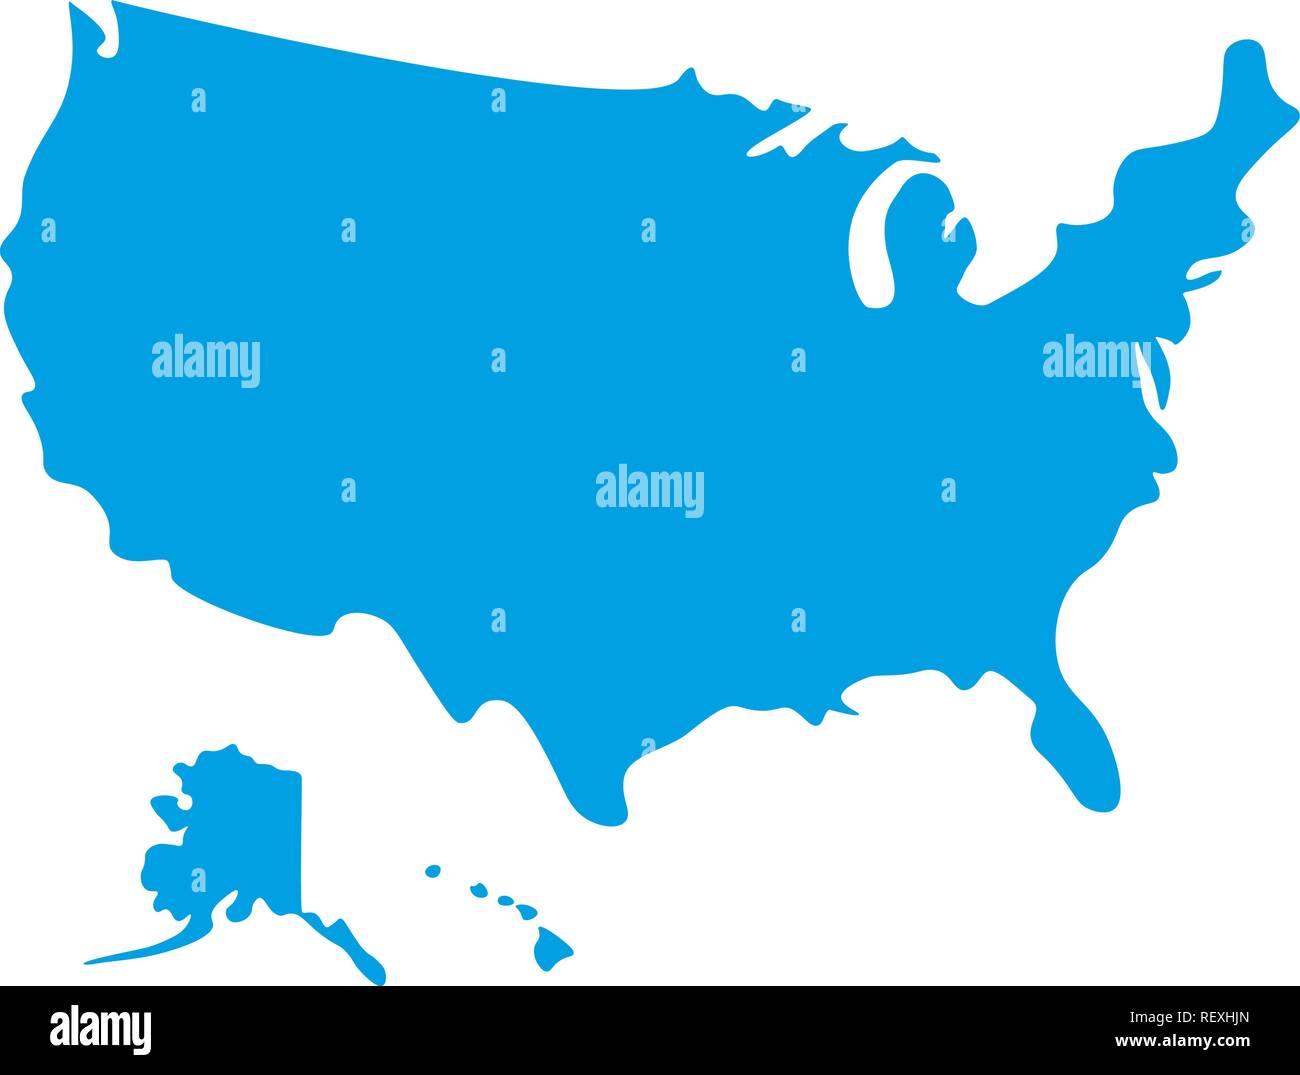 Mappa di Stati Uniti d'America. Silhouette mappa degli Stati Uniti d'America illustrazione vettoriale Illustrazione Vettoriale